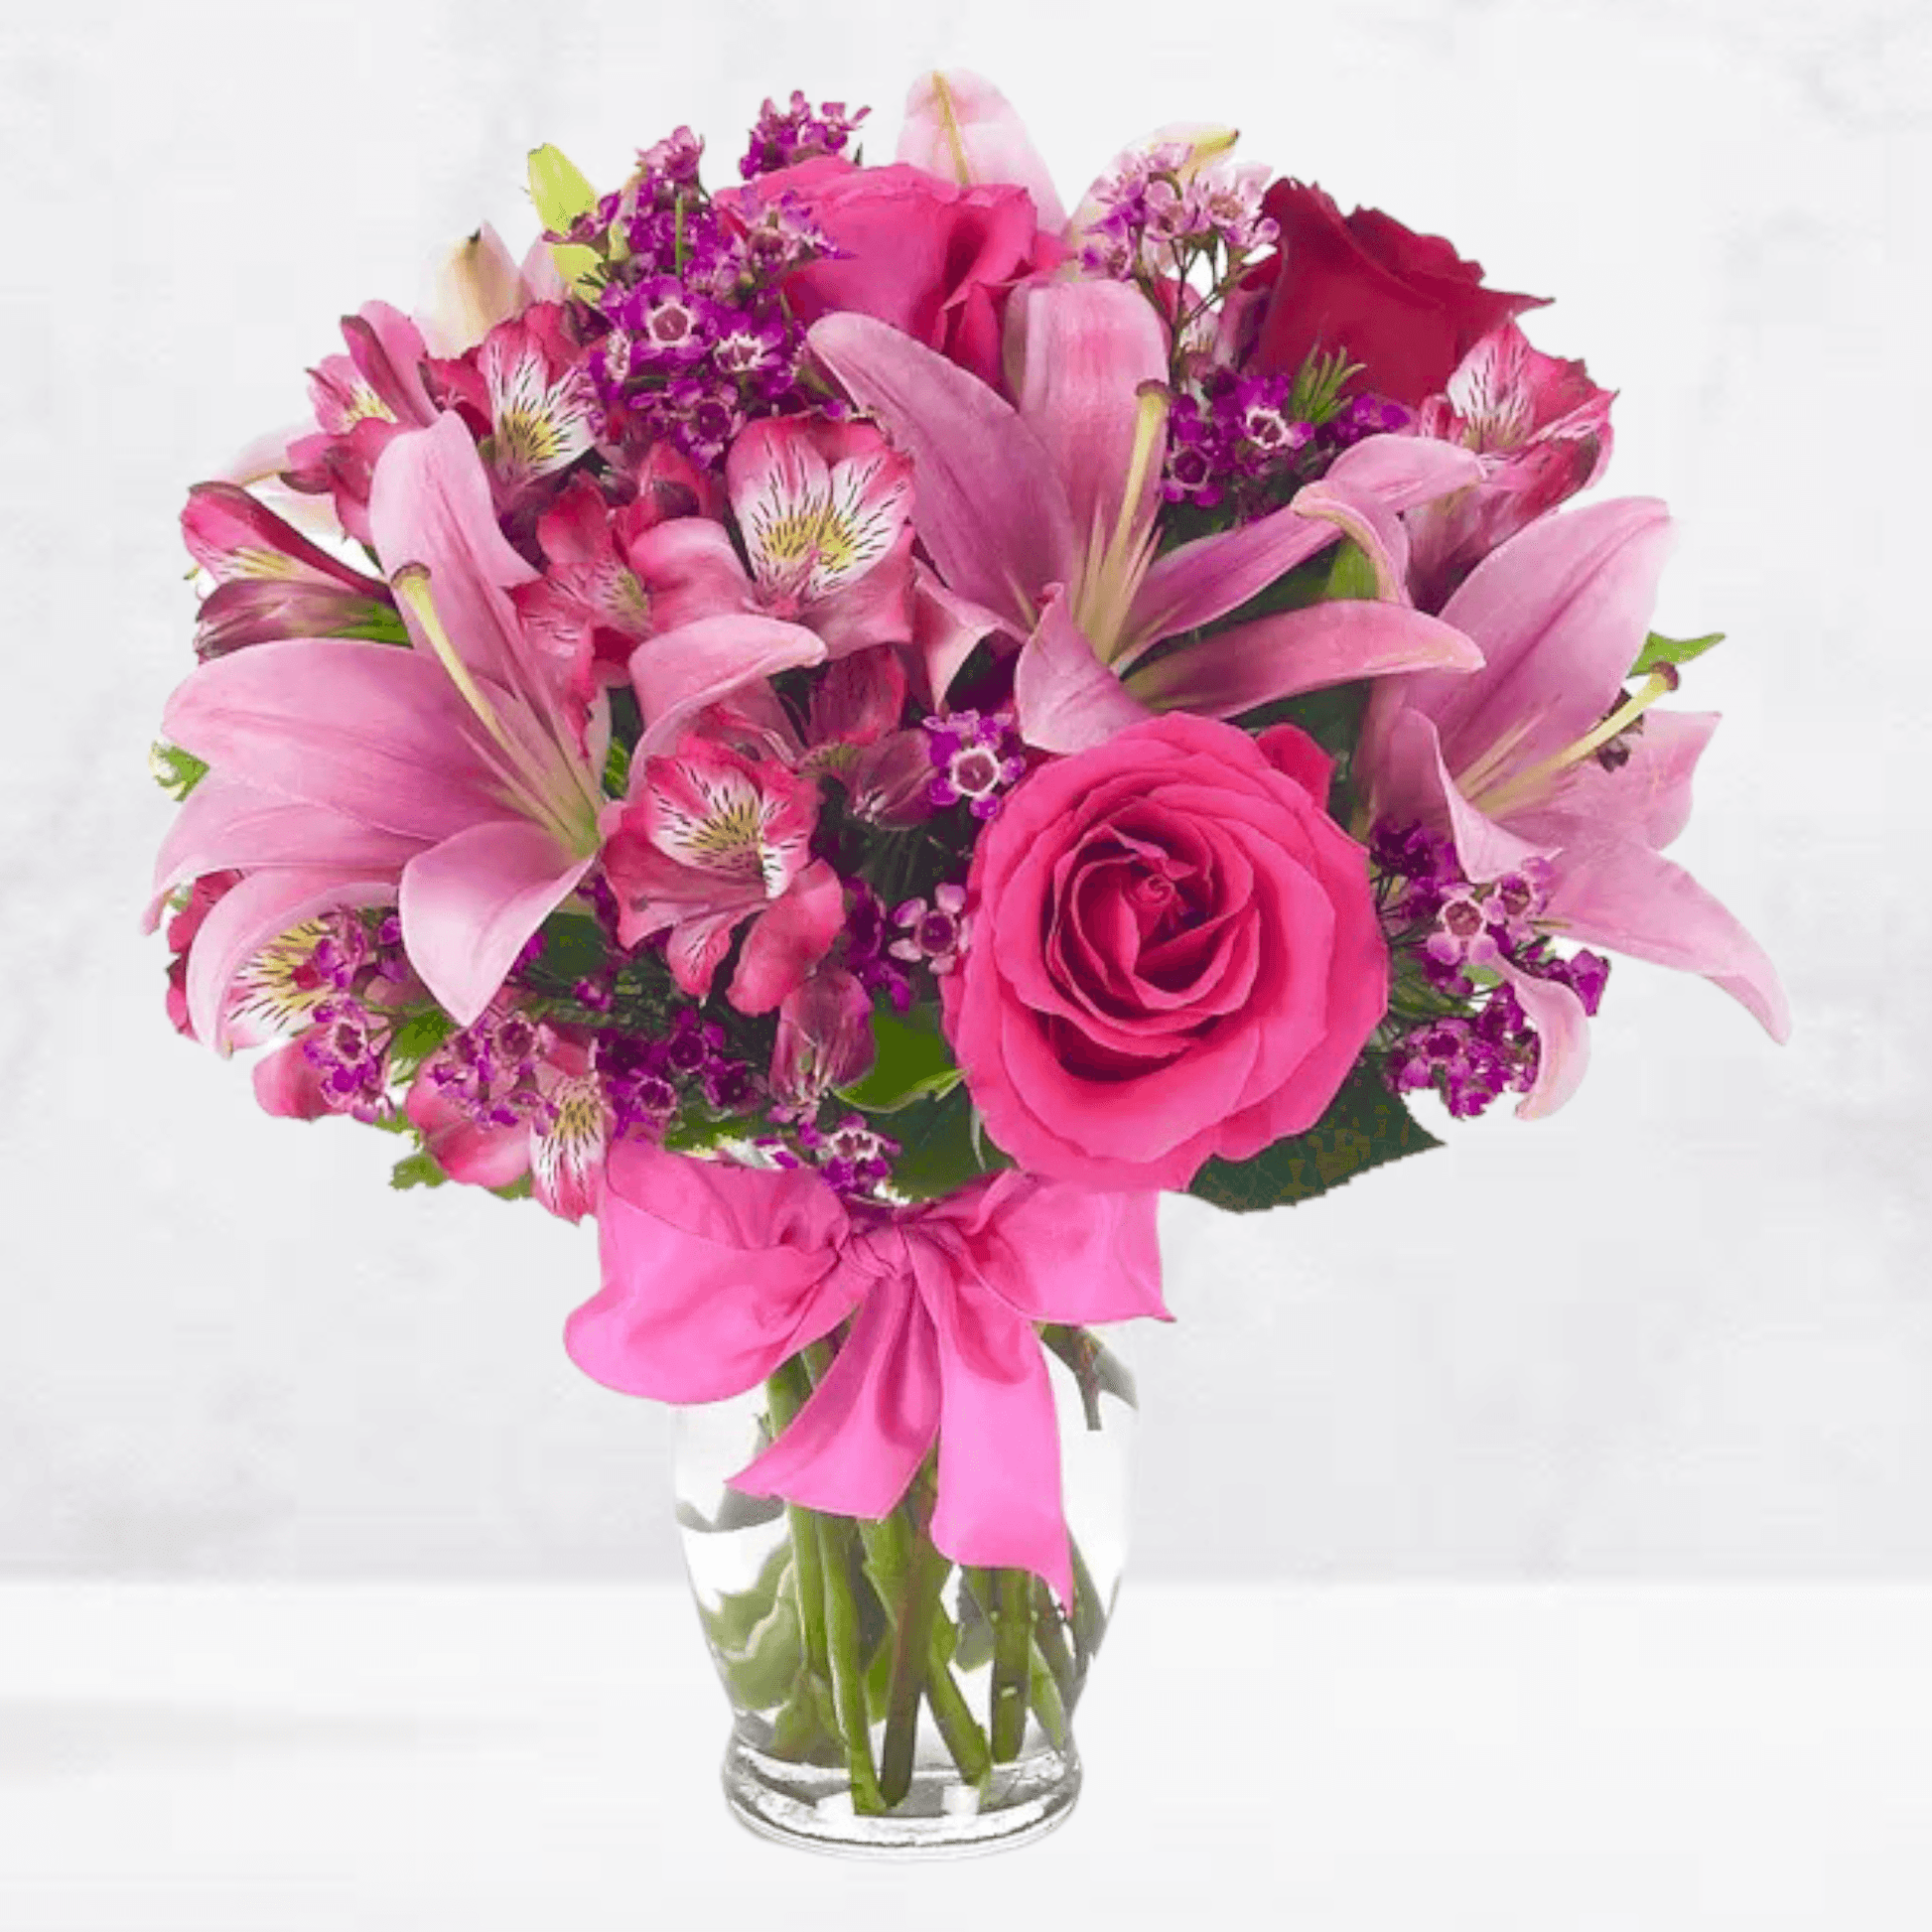 Rose & Lily Celebration - DGM Flowers  | Fort Lauderdale Florist